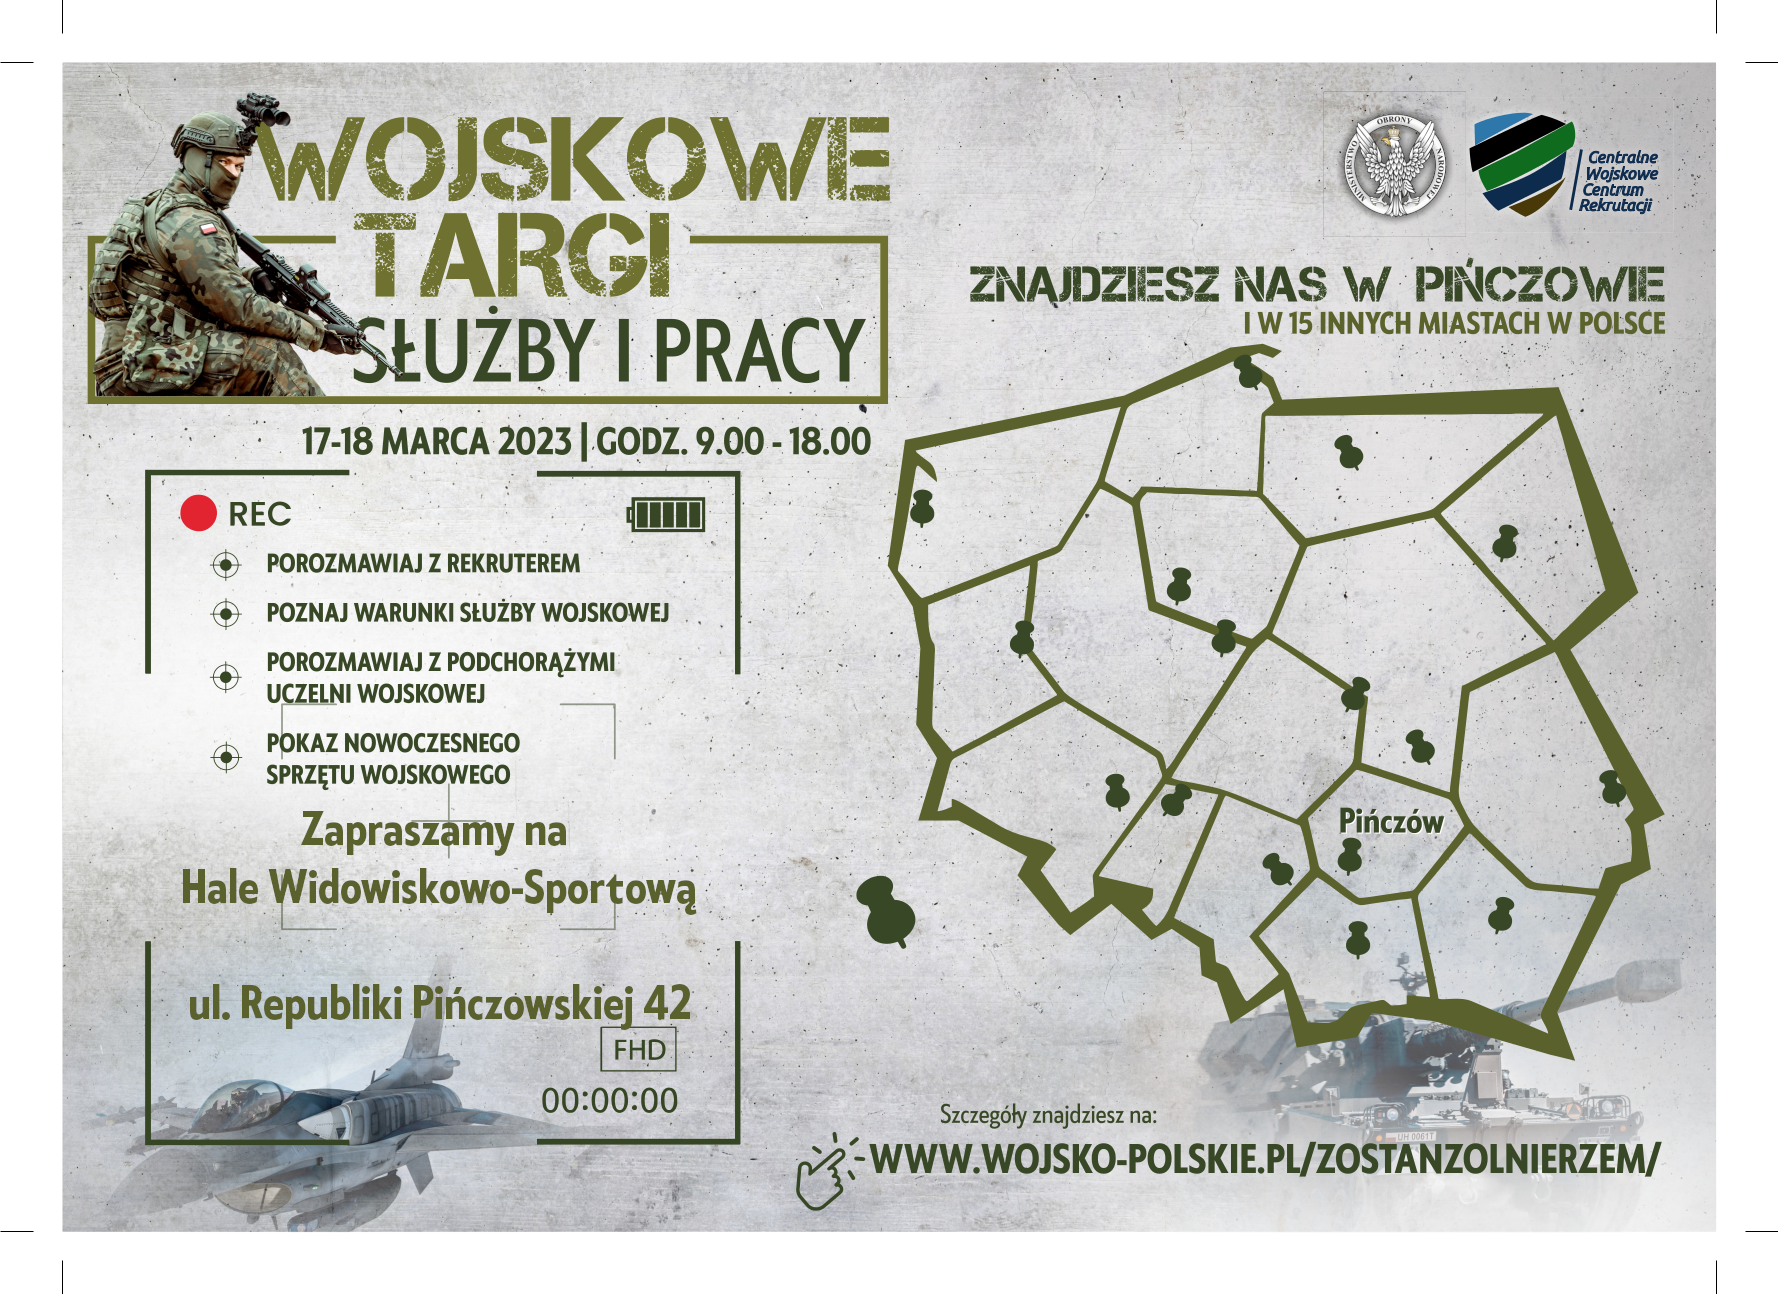 Informacja o Wojskowych Targach Służby i Pracy w Pińczowie - 17-18 marca 2023 r.